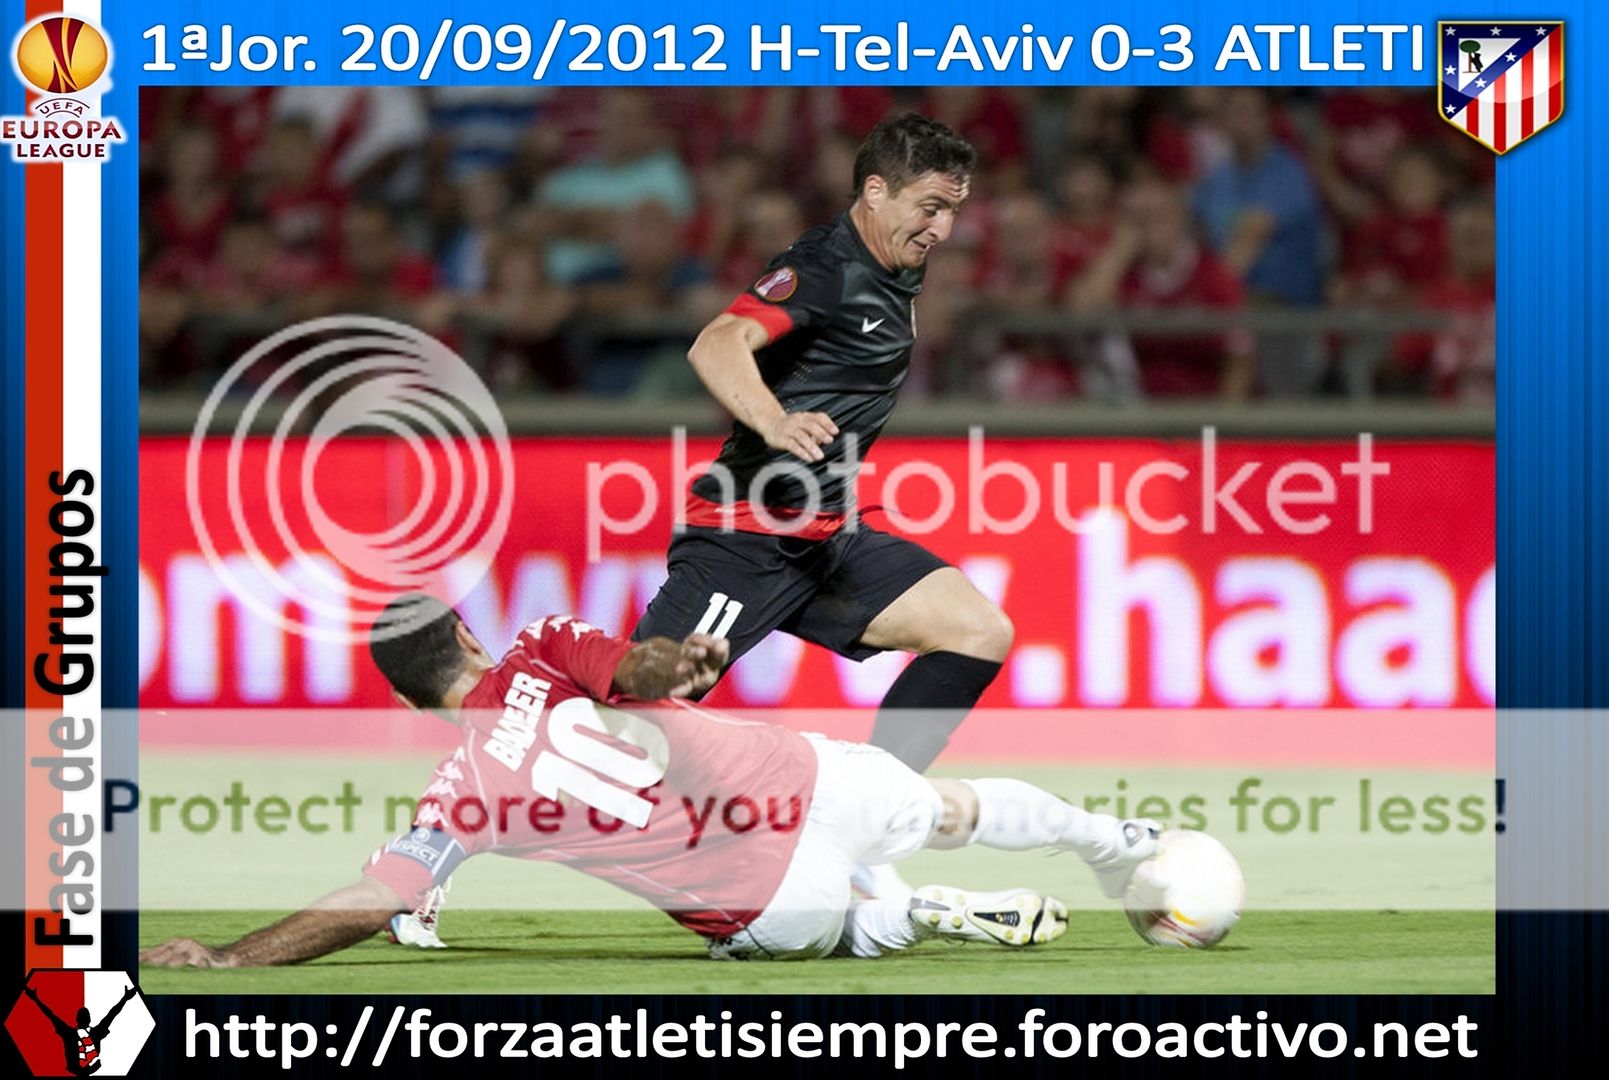 1ª Jor. UEFA Euro. L. 2012/13 - H. Tel Aviv 0-3 ATLETI - La cara B del ... 027Copiar_zpsc09e7bce